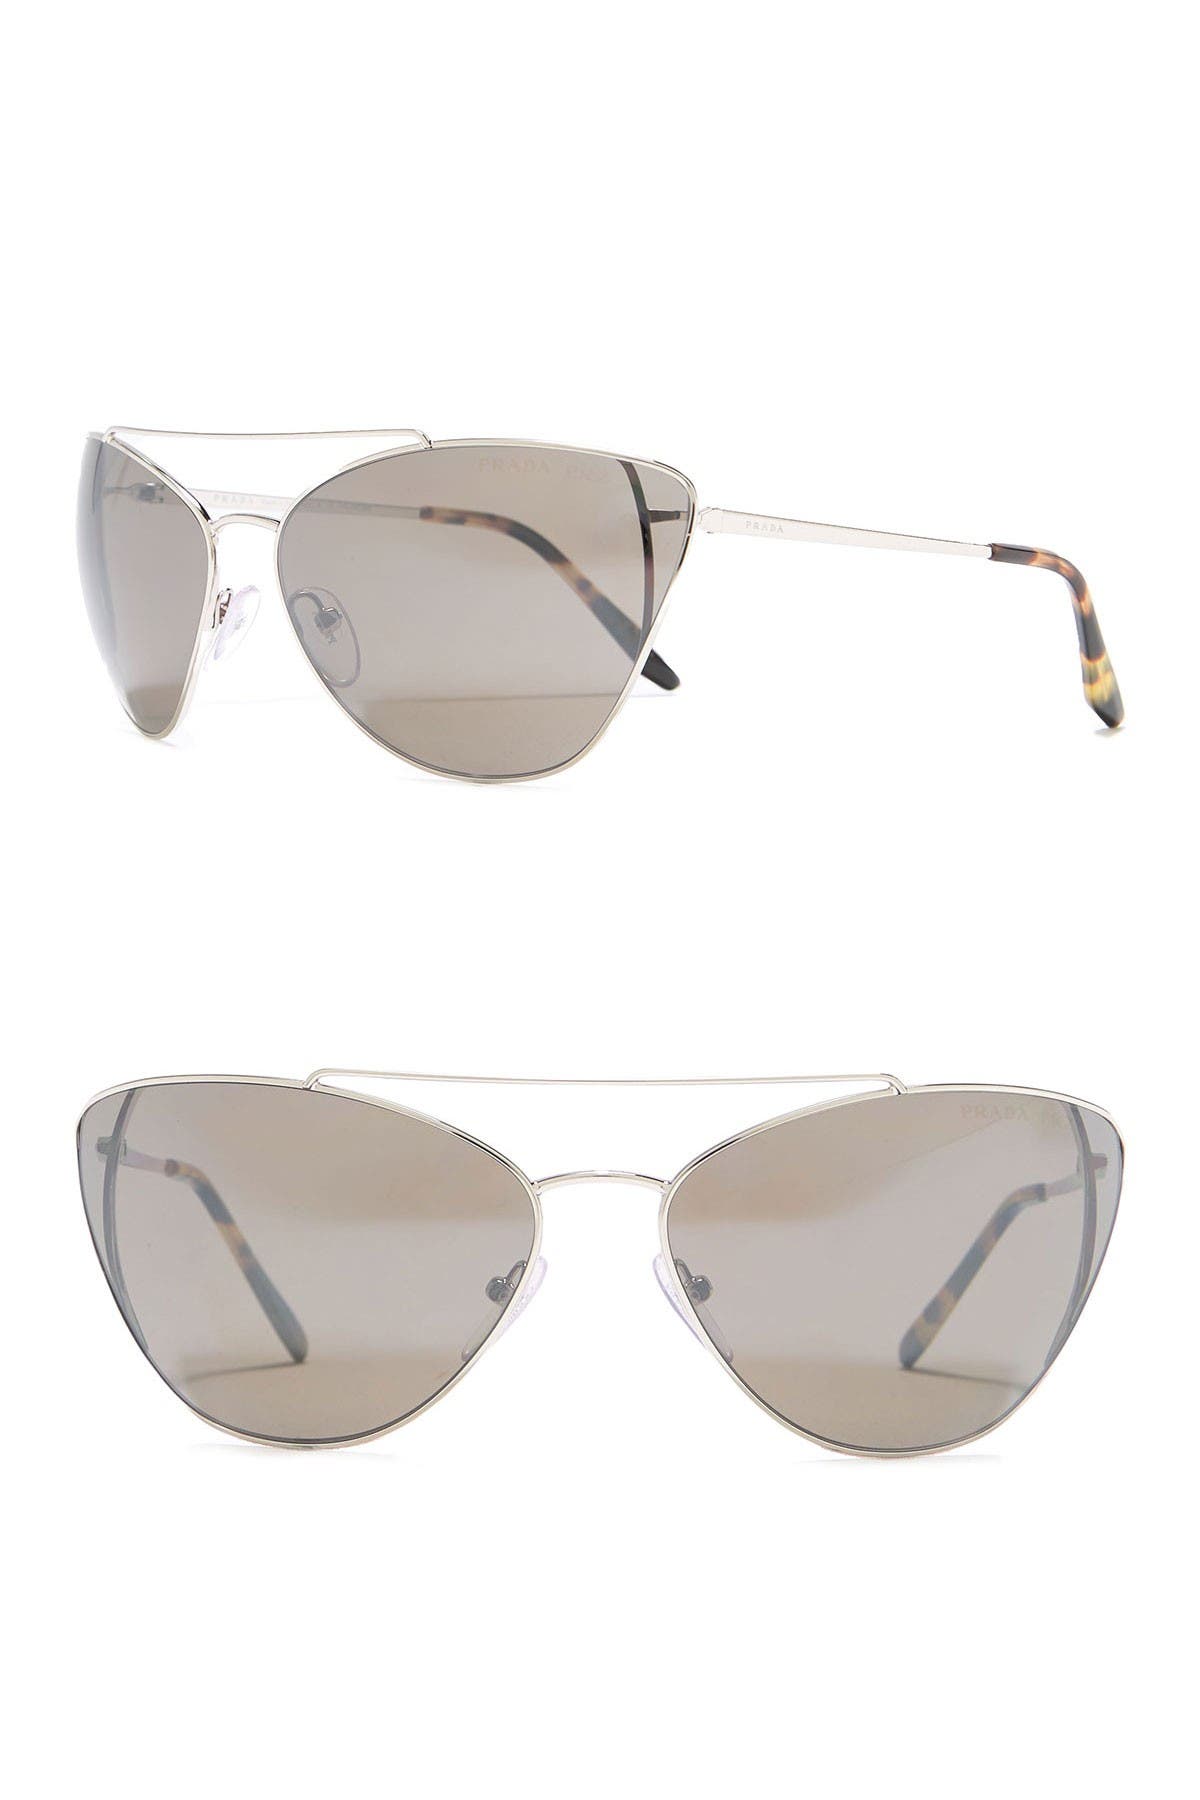 Prada | 68mm Cat Eye Aviator Sunglasses 